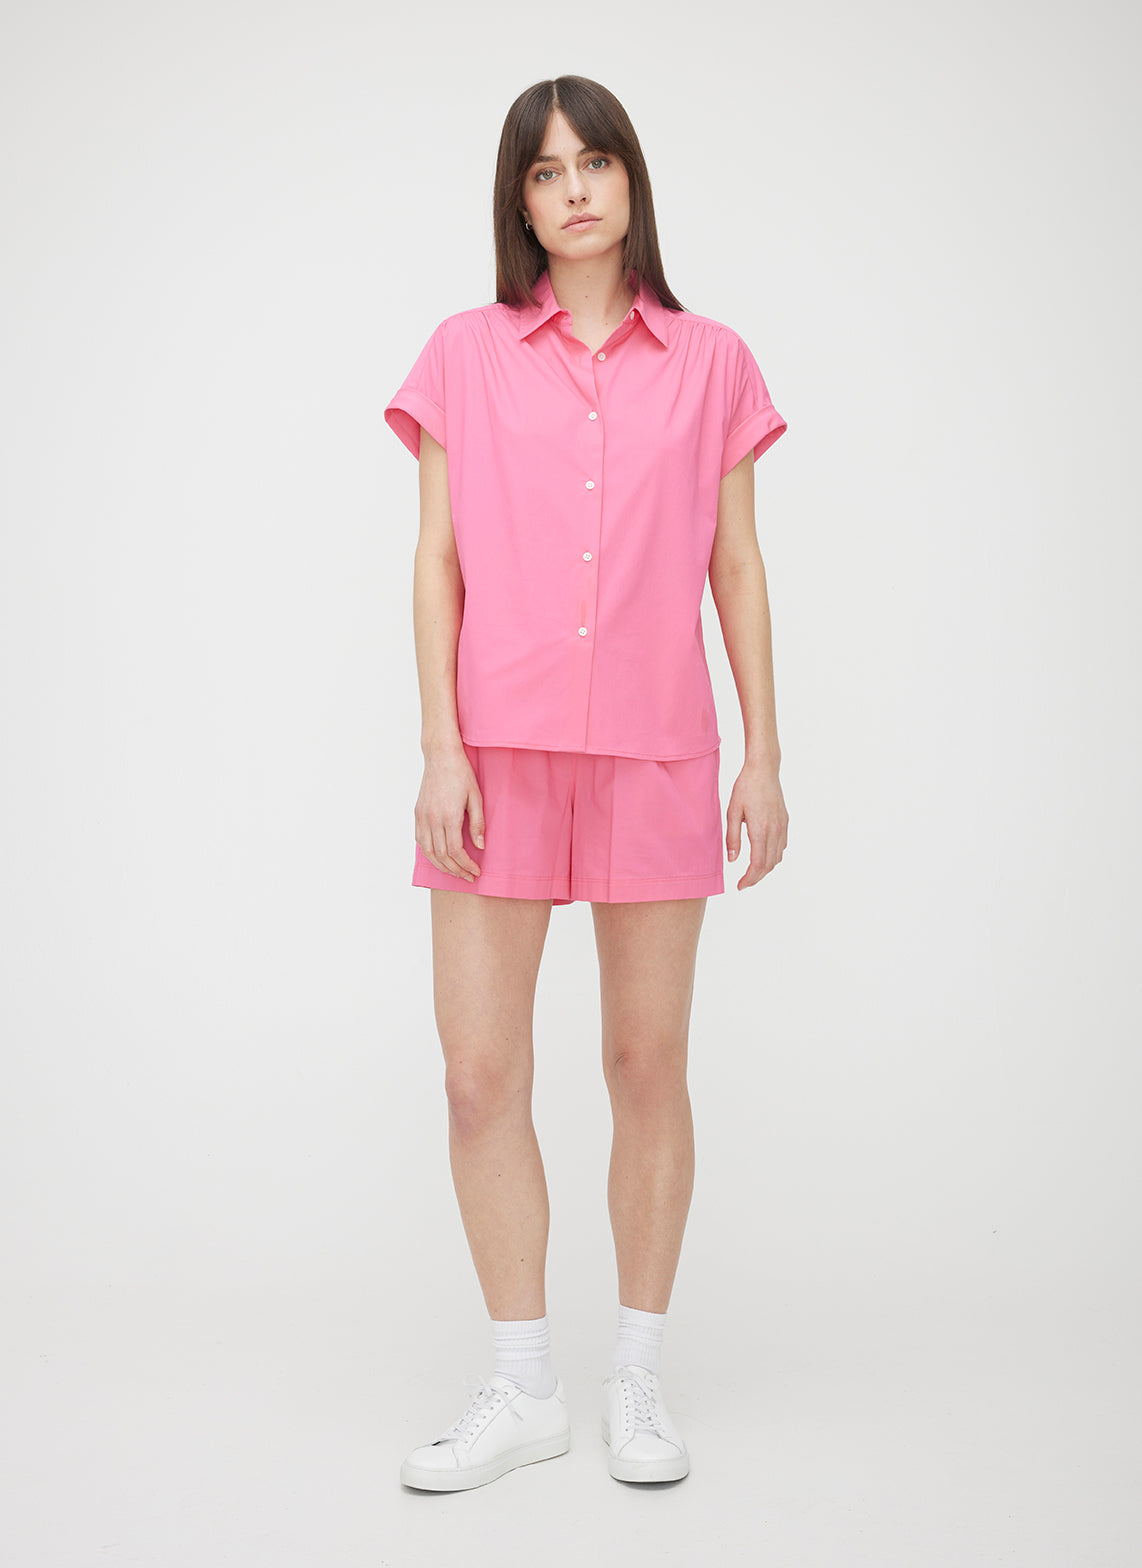 Kit and Ace — Marbella Short Sleeve Shirt